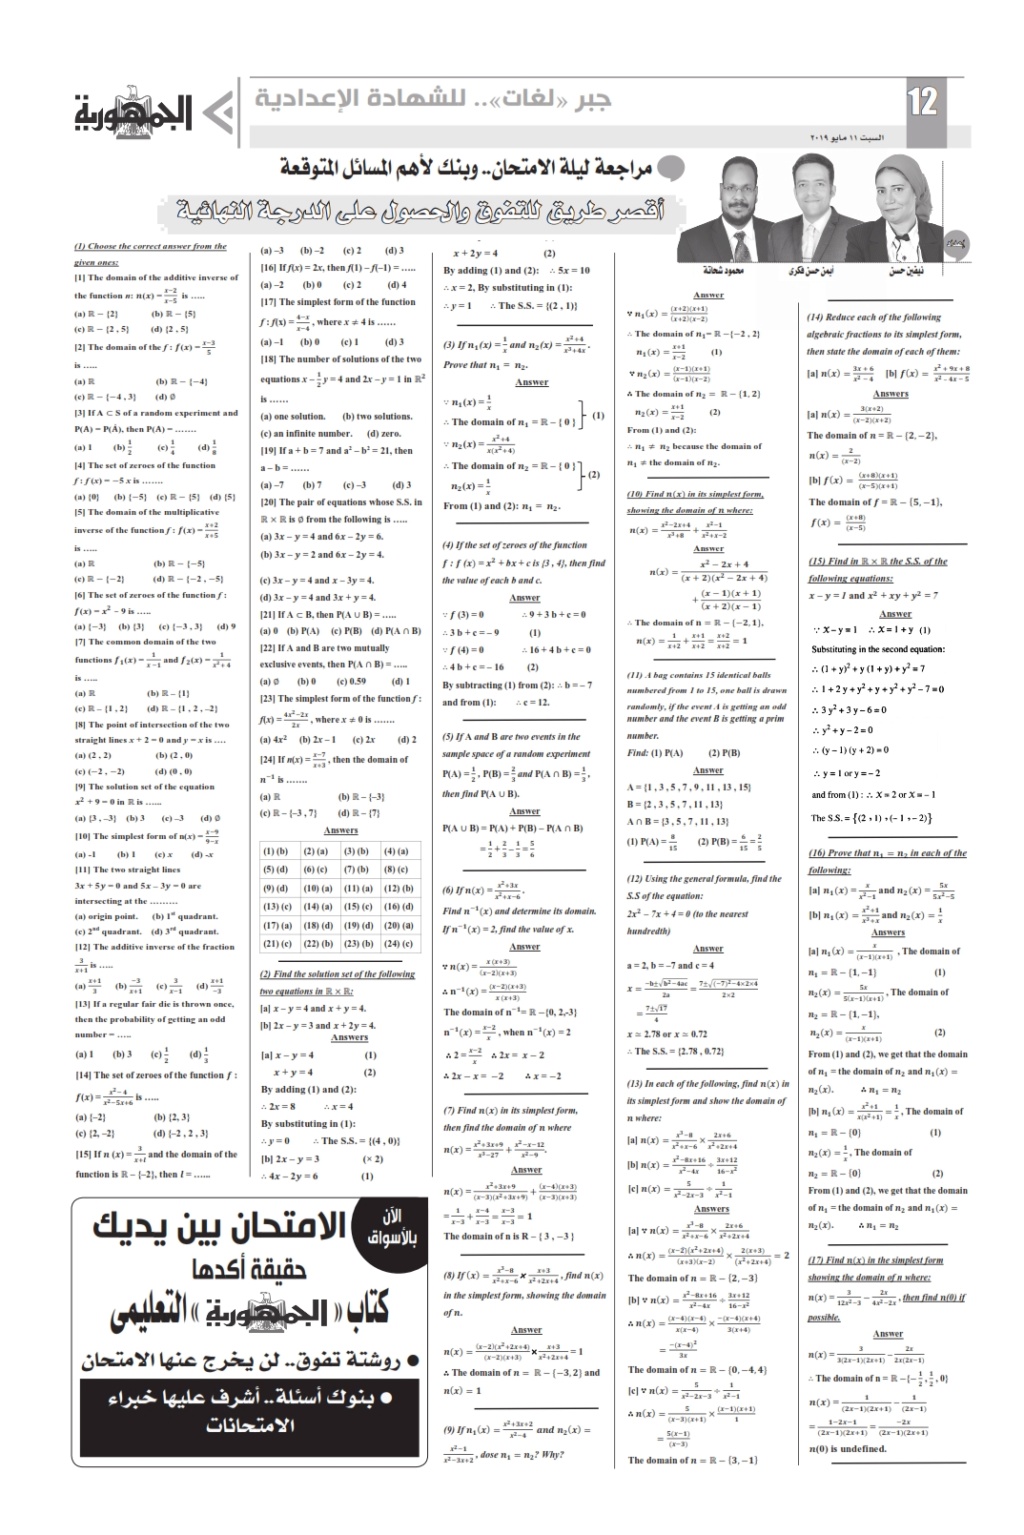 مراجعة الشهادة الإعدادية جبر عربى و لغات من الملحق التعليمي 11 مايو2019   12_00110